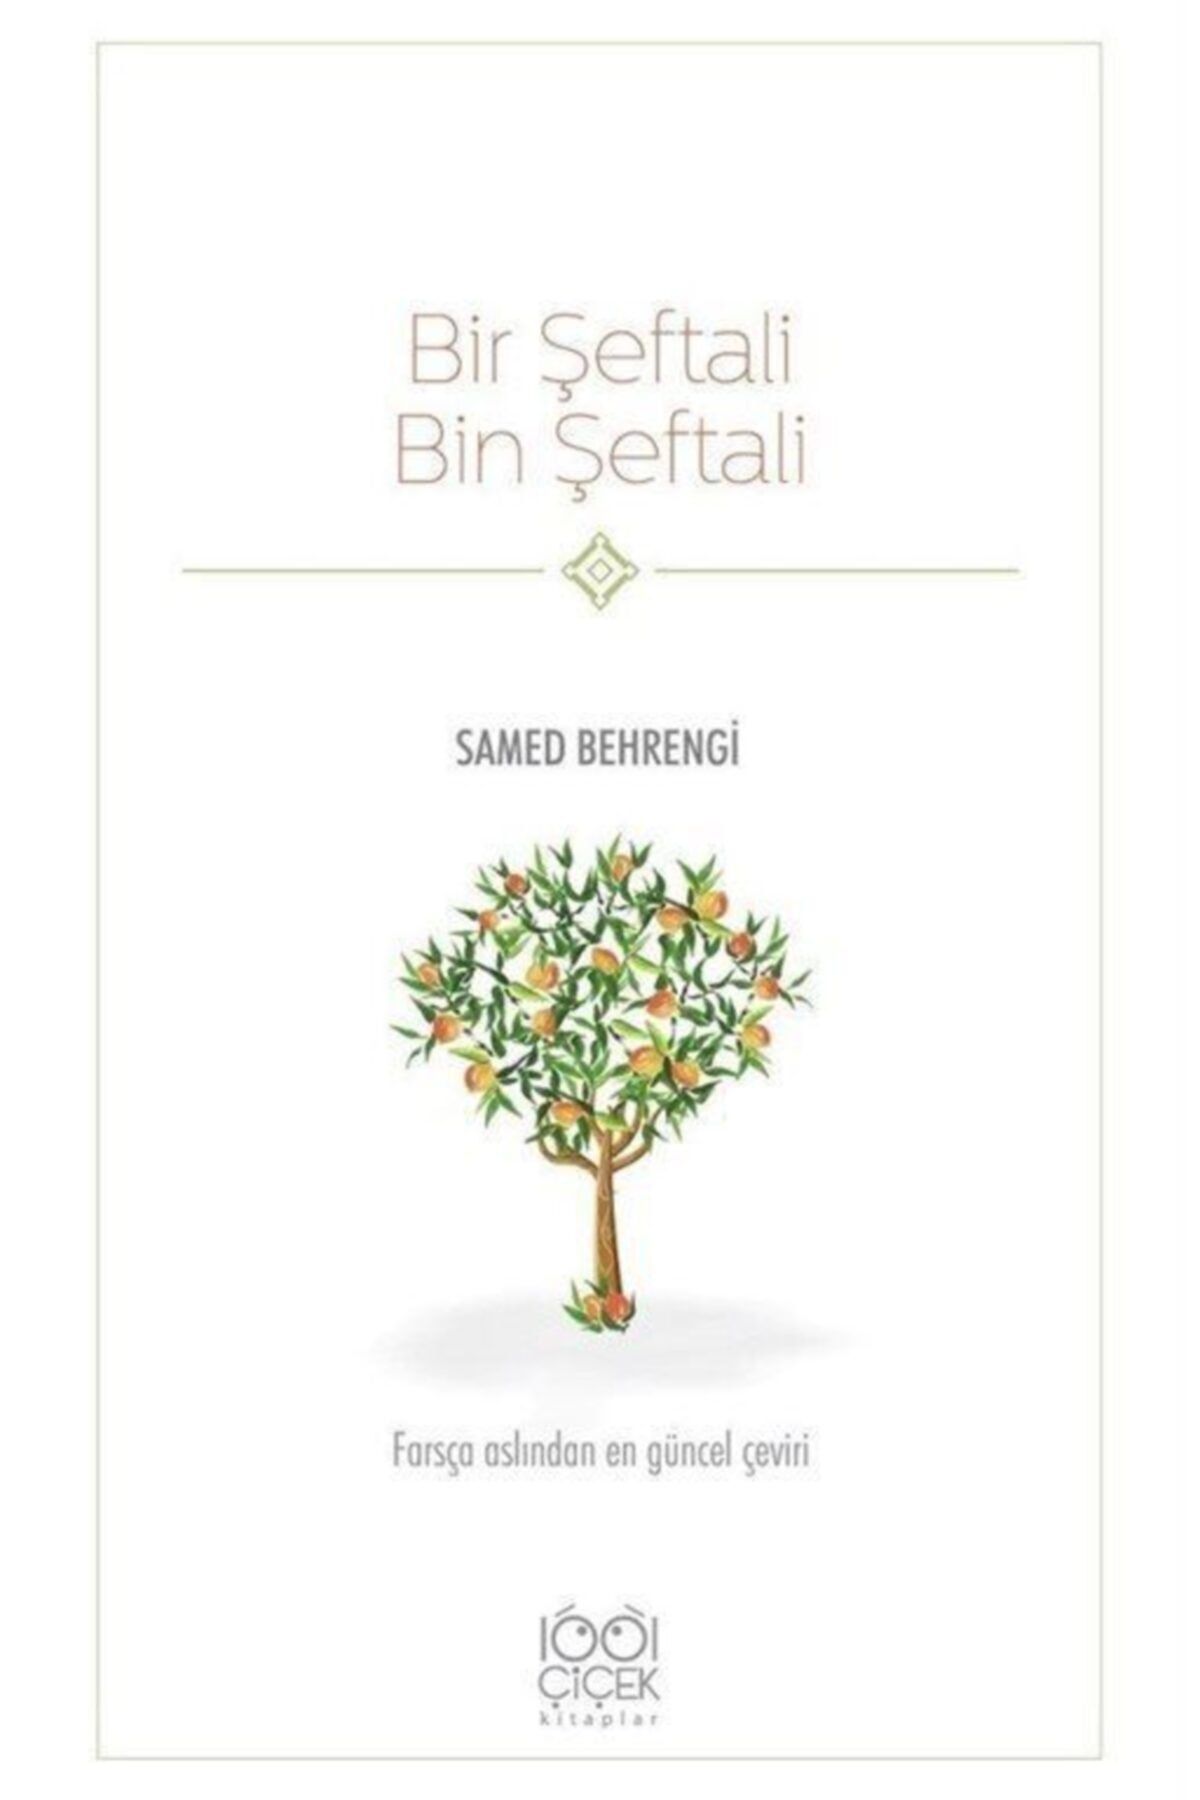 1001 Çiçek Kitaplar Bir Şeftali Bin Şeftali - Samed Behrengi